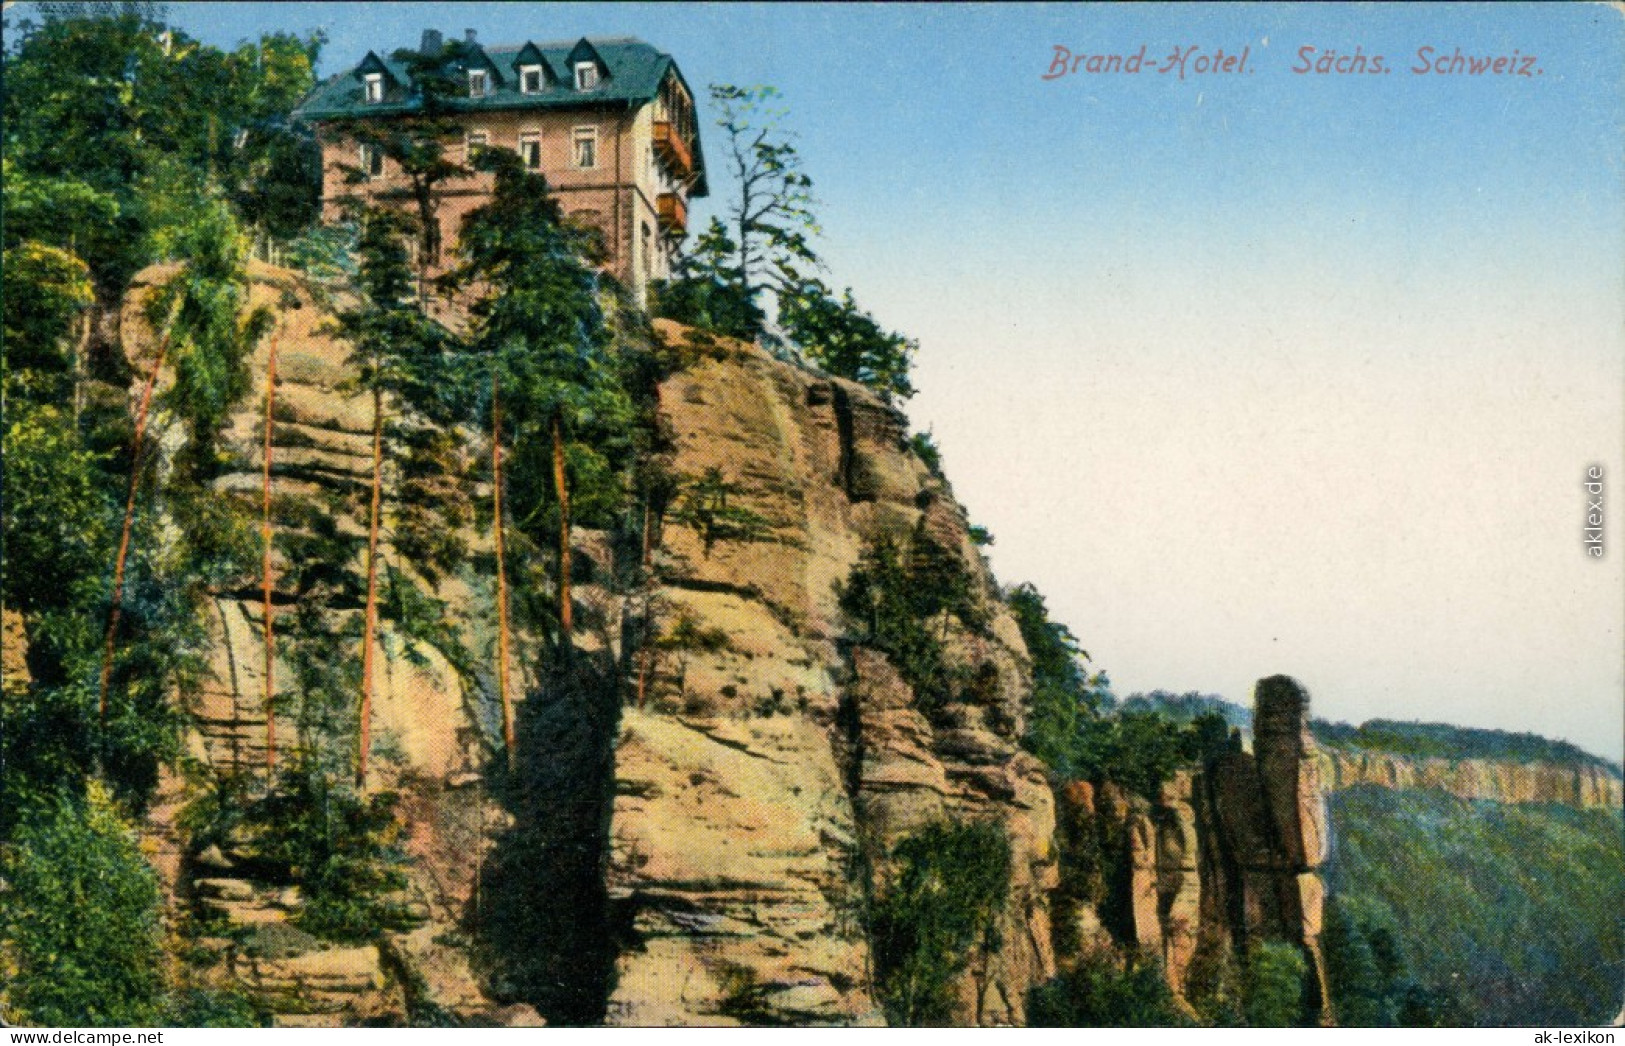 Ansichtskarte Hohnstein (Sächs. Schweiz) Brand-Hotel 1913 - Hohnstein (Sächs. Schweiz)